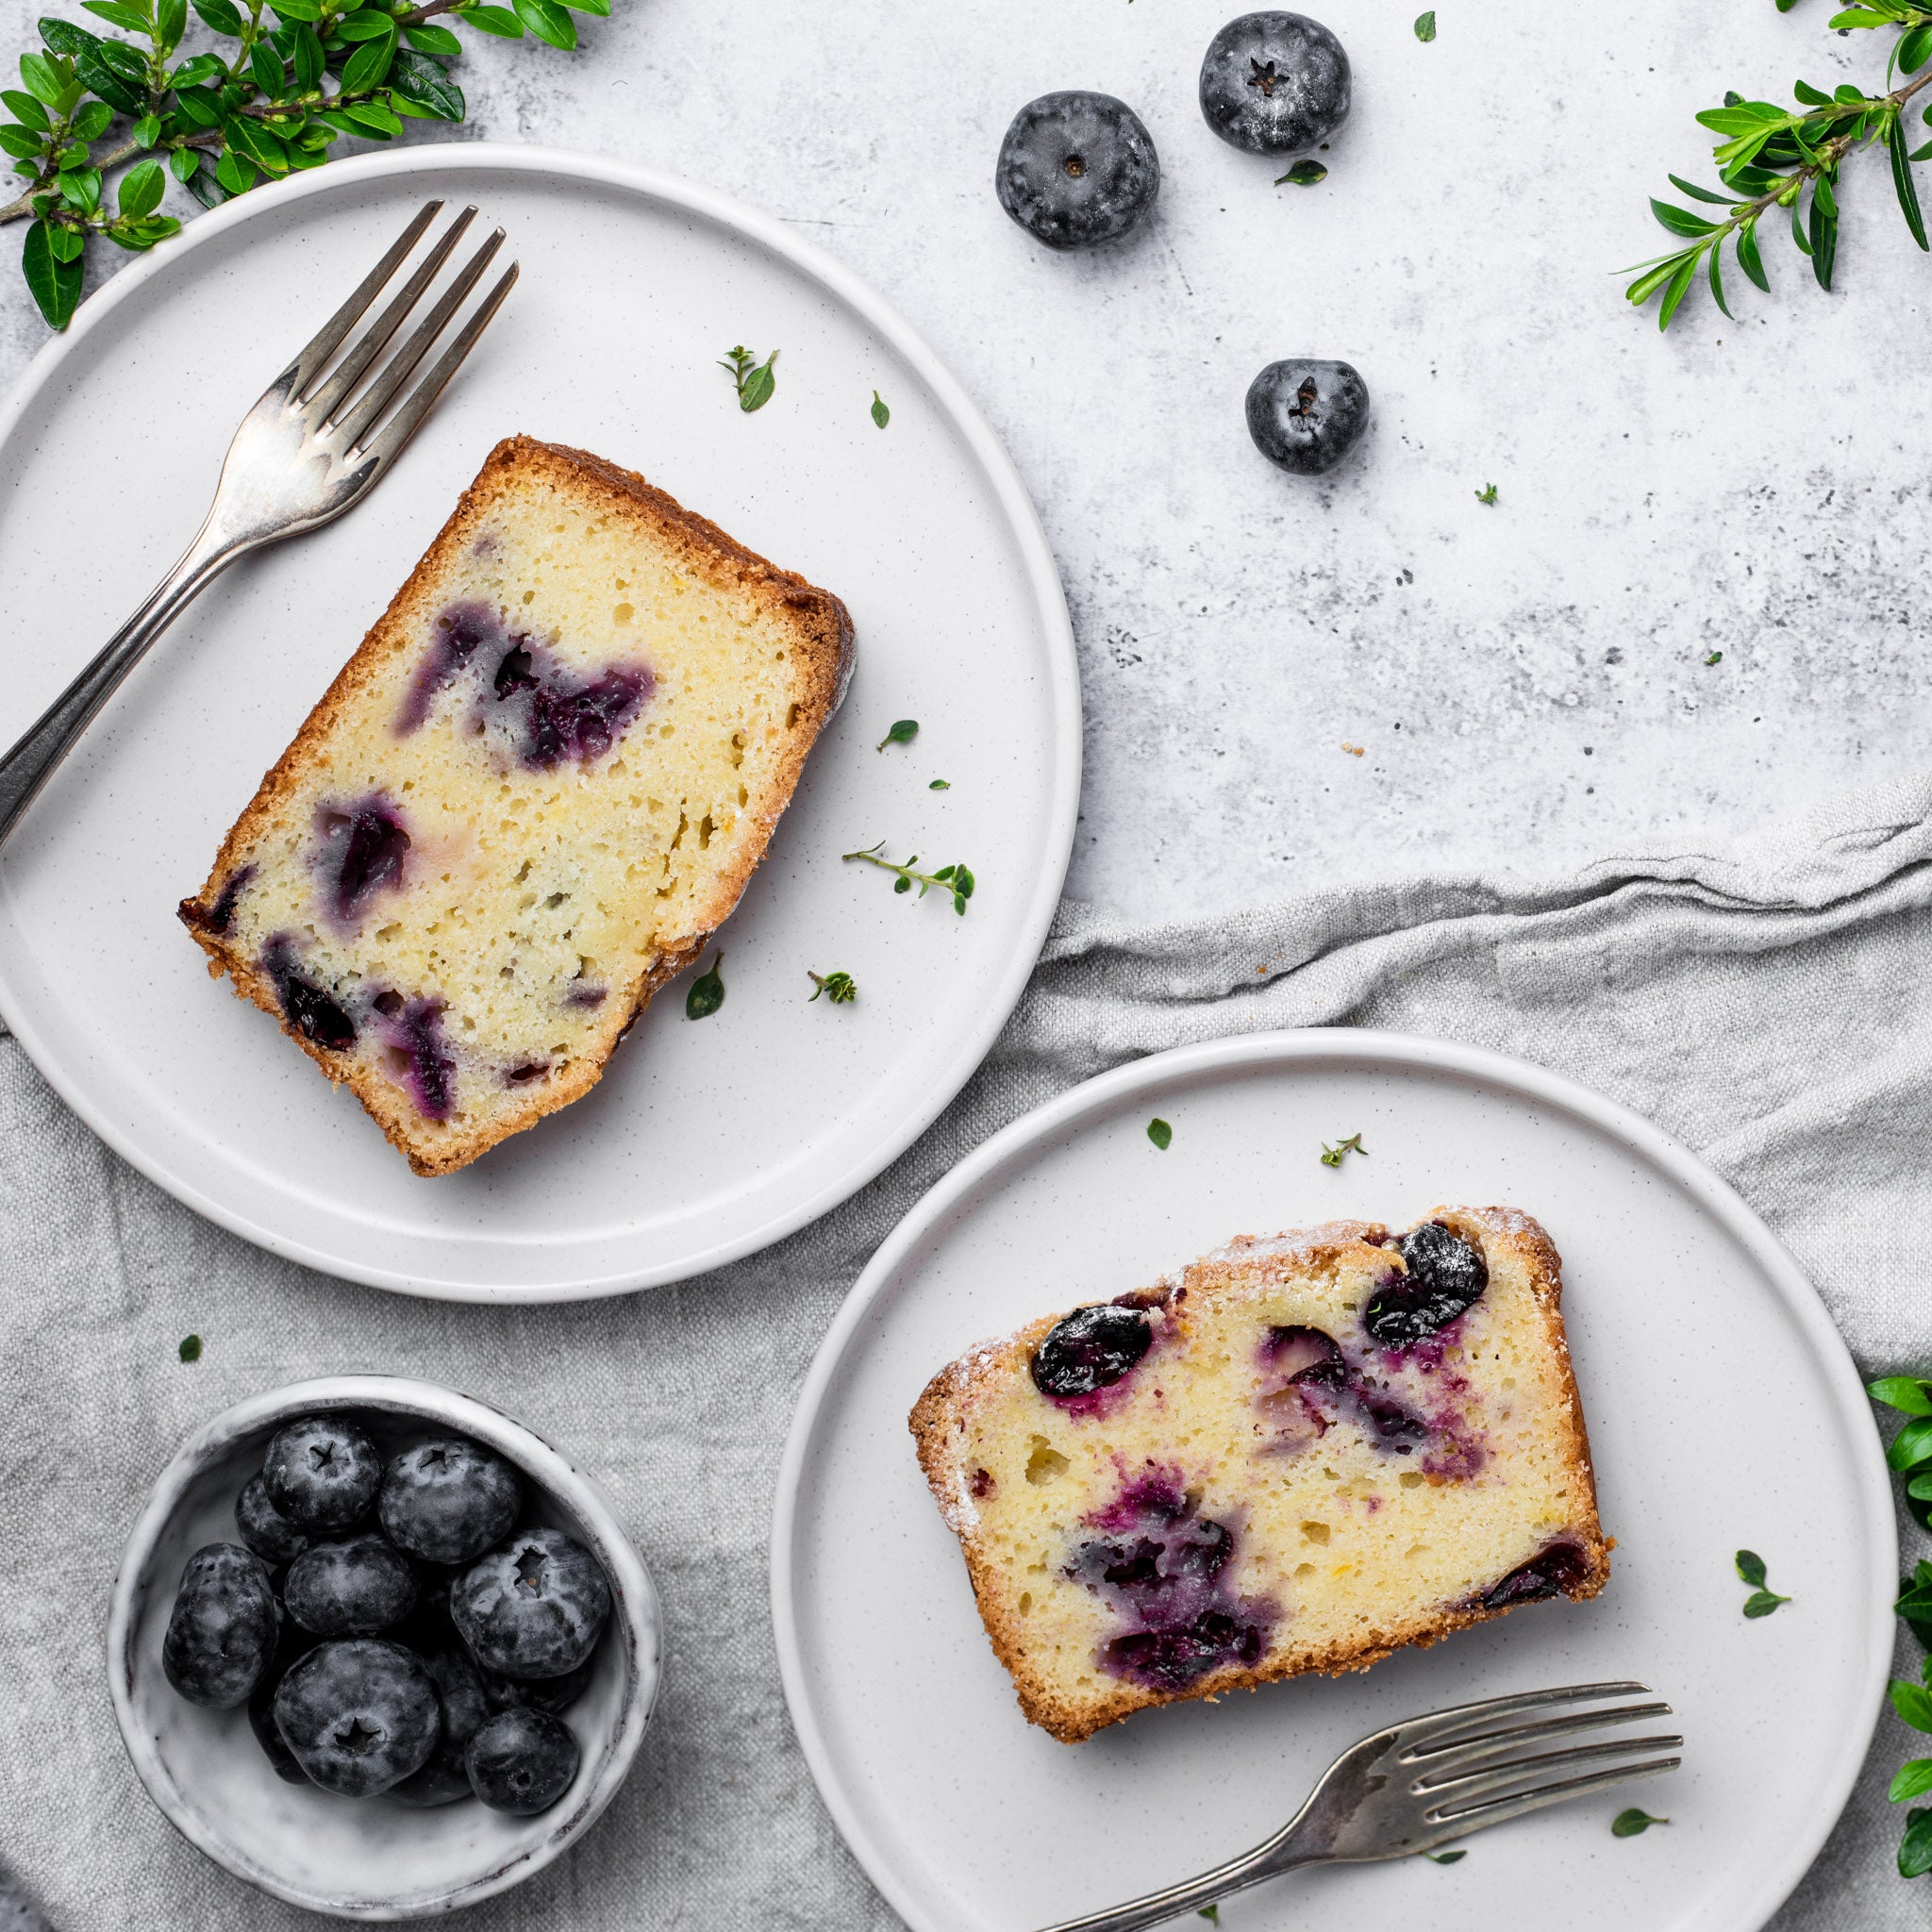 Allinsons-Blueberry-Lemon-Loaf-Cake-1-1-Baking-Mad-3.jpg